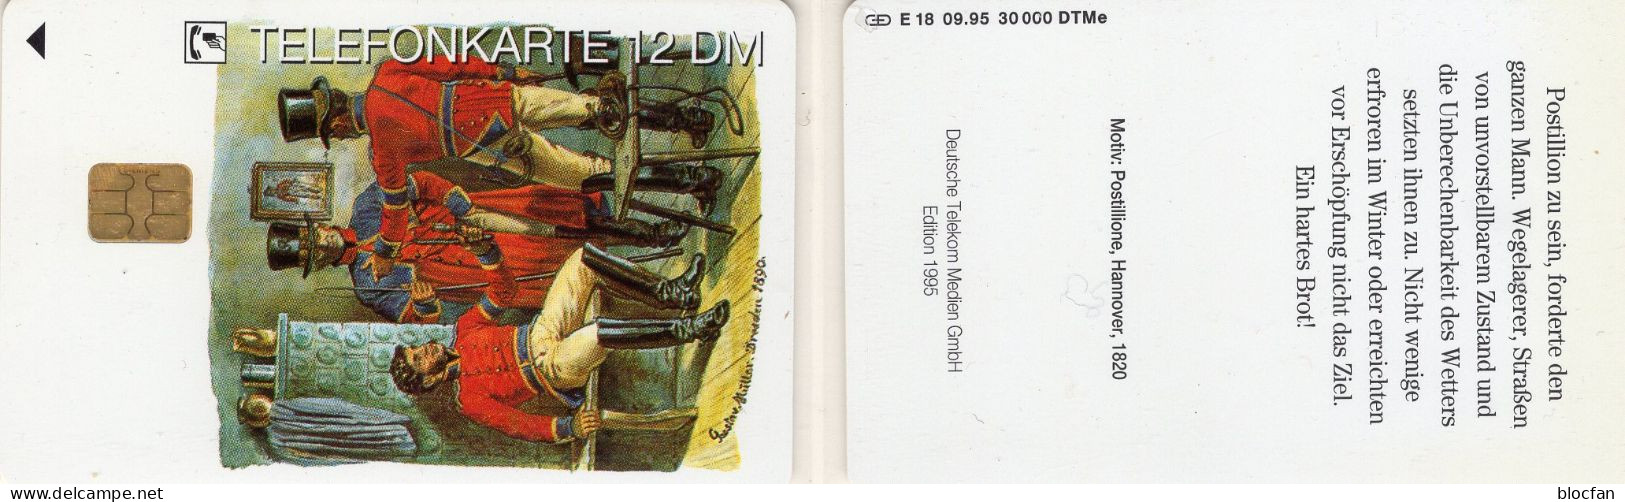 Postillion Hannover TK E18/1995 30.000 Expl.** 30€ Edition 5 Postillione Mit Postuniformen TC History Phonecard Germany - Kultur